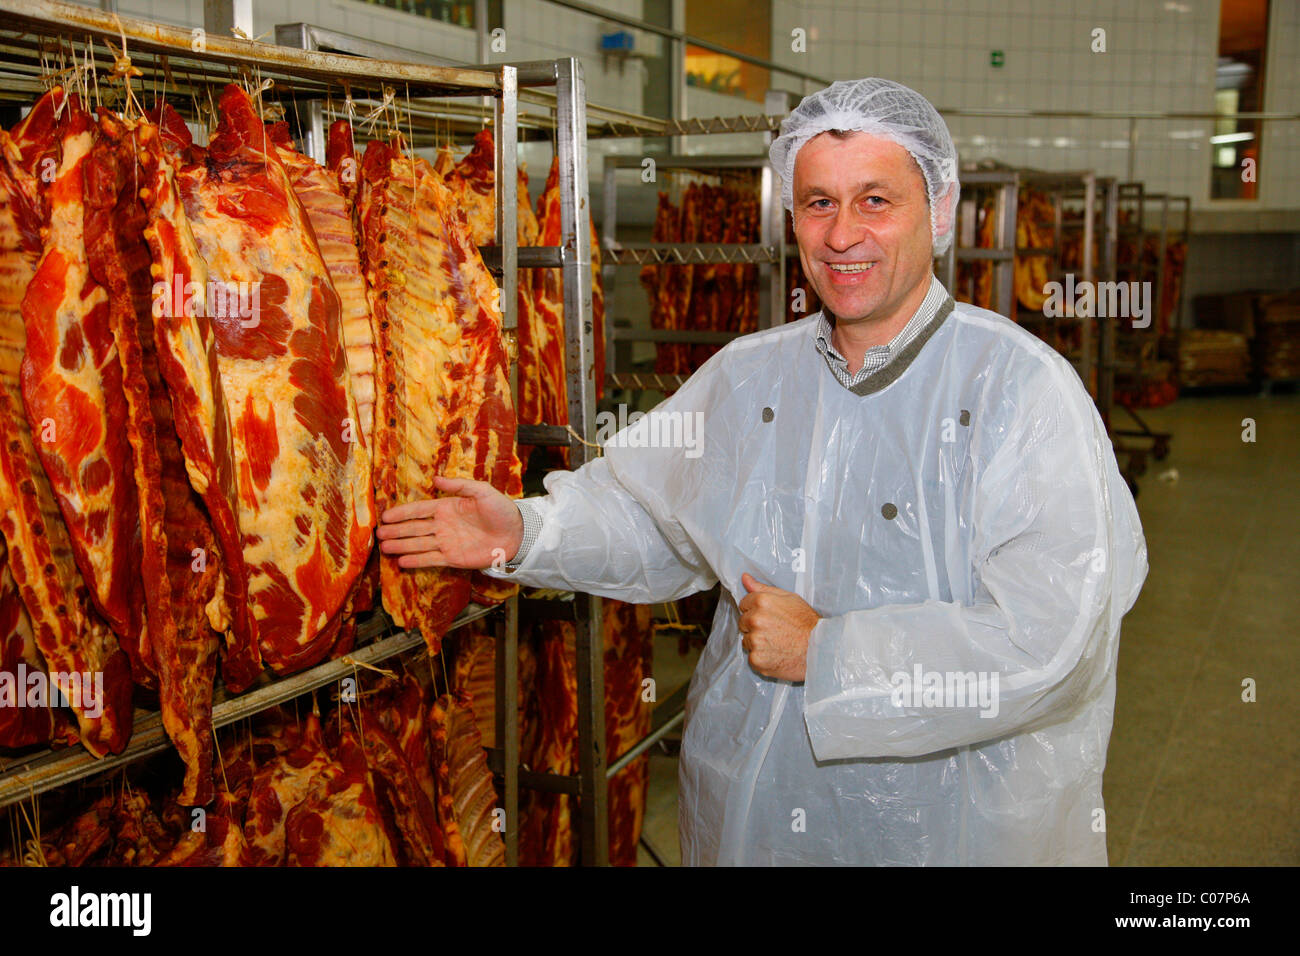 Fleischerzeugnisse aufgehängt für das Rauchen, Llanquihue, Süd-Chile, Südamerika Stockfoto